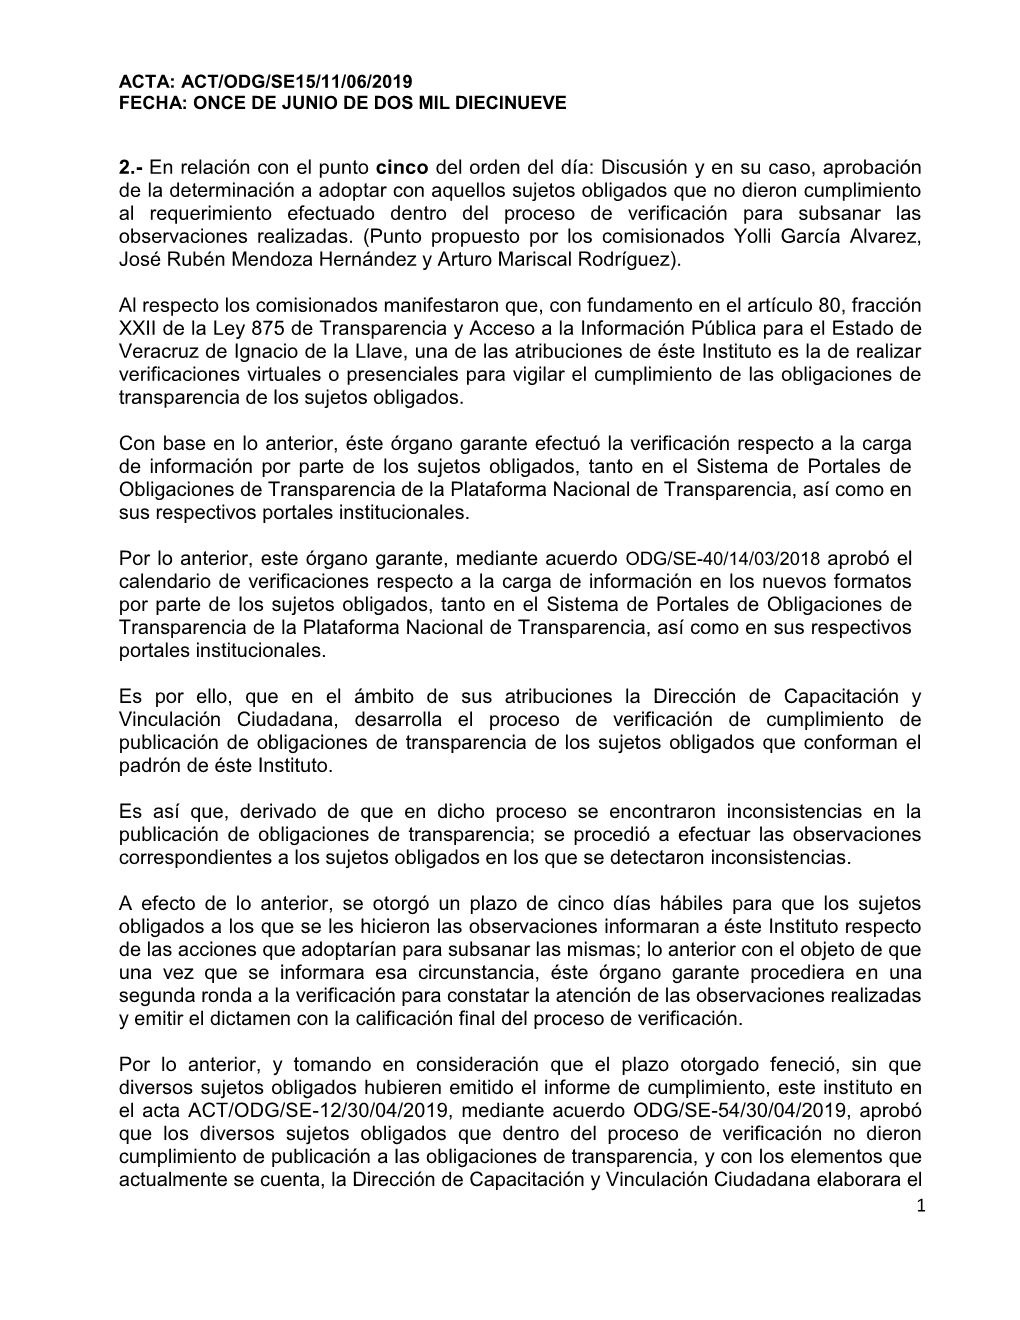 Acta: Act/Odg/Se15/11/06/2019 Fecha: Once De Junio De Dos Mil Diecinueve